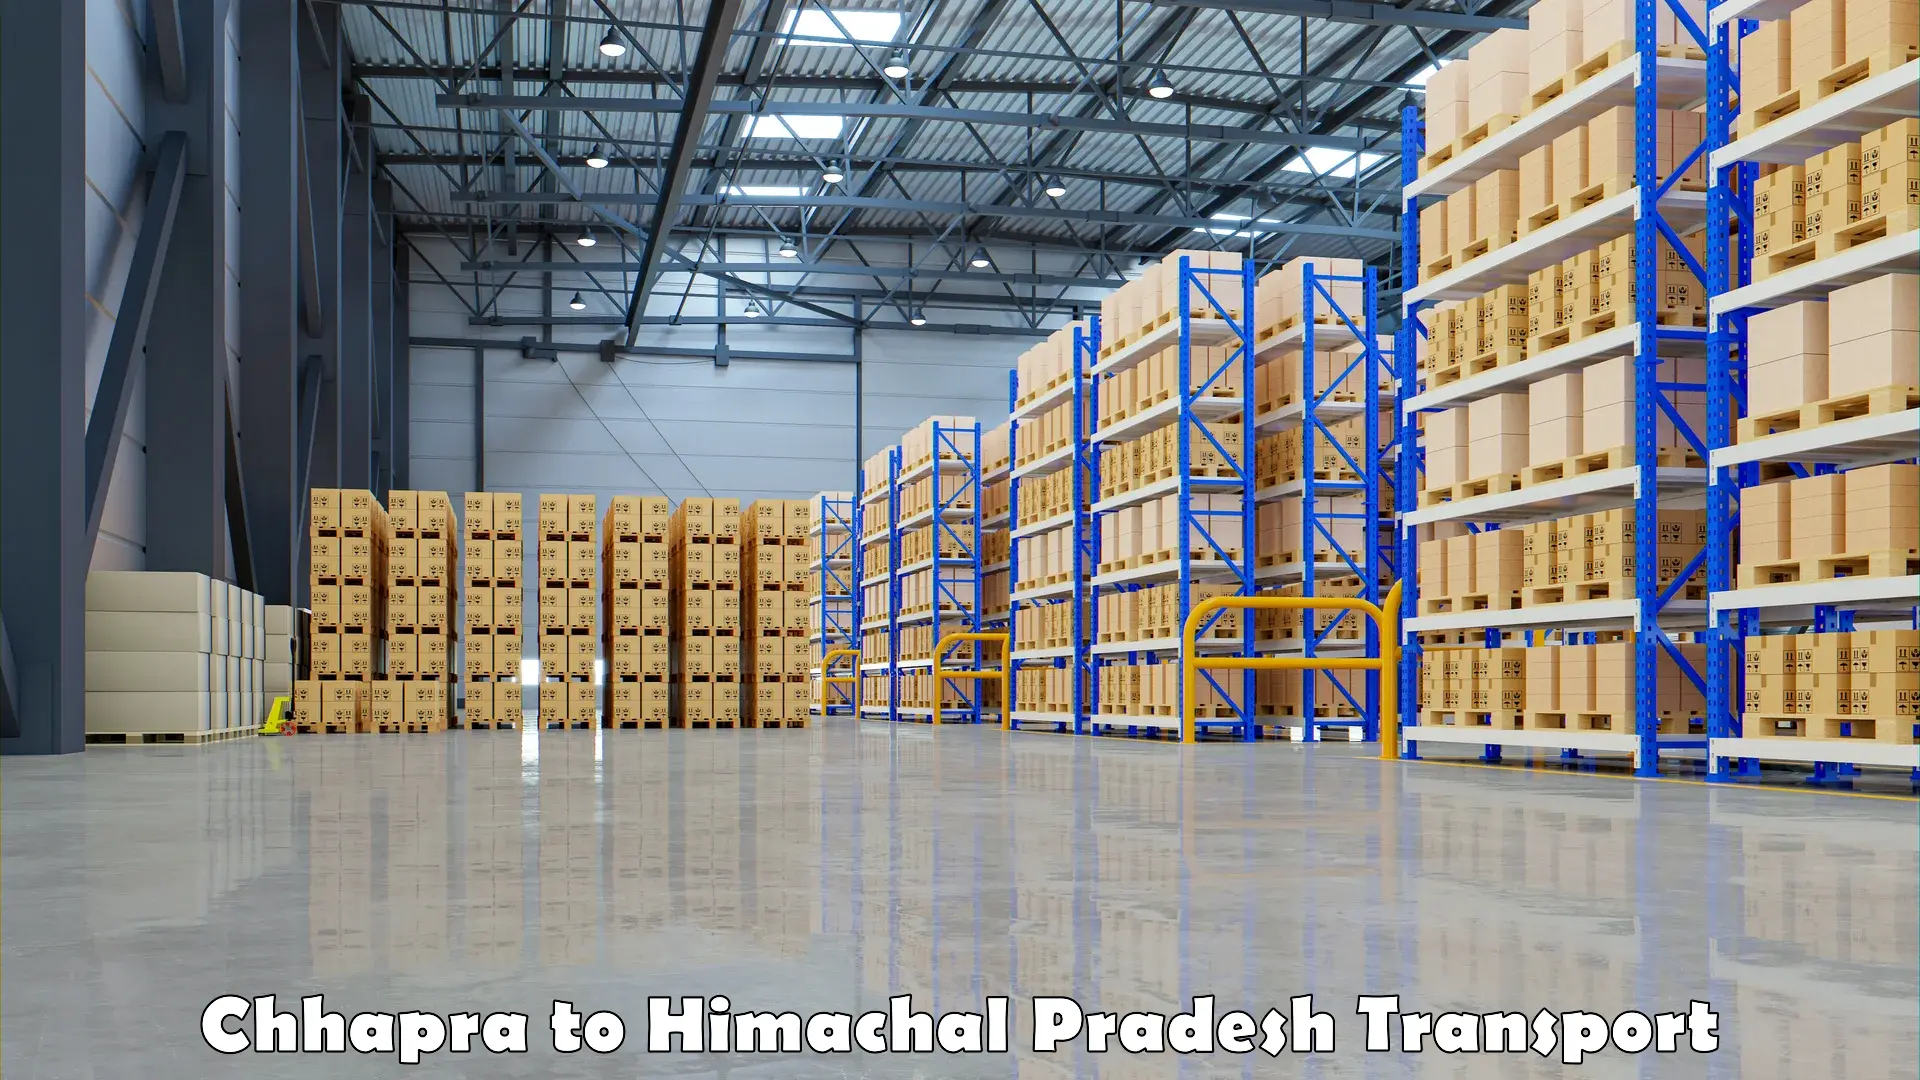 Truck transport companies in India Chhapra to Nagwain